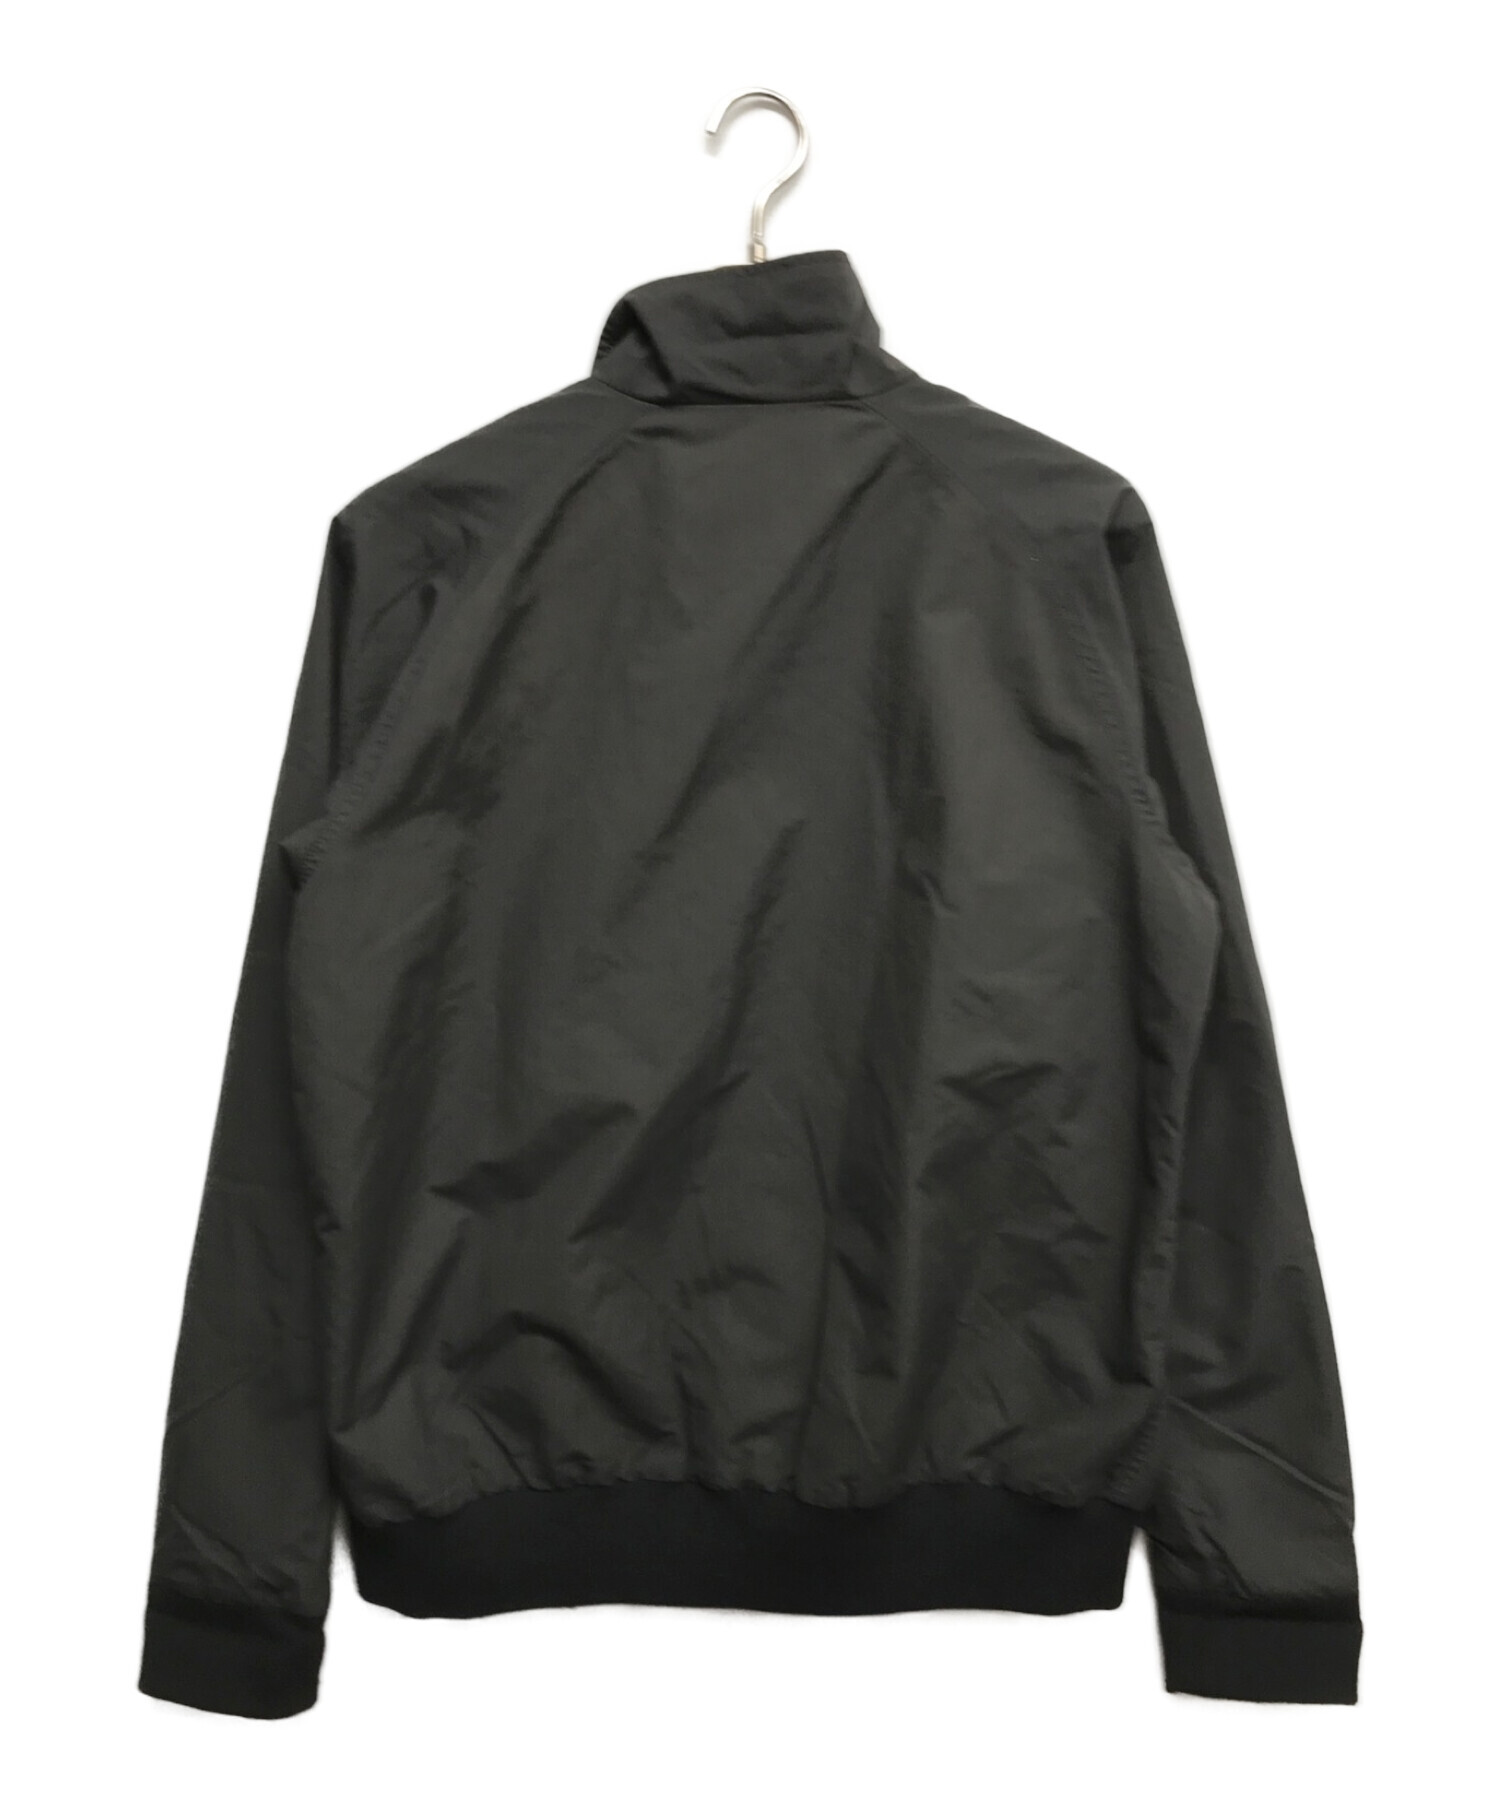 Patagonia (パタゴニア) バギーズジャケット ブラック サイズ:M